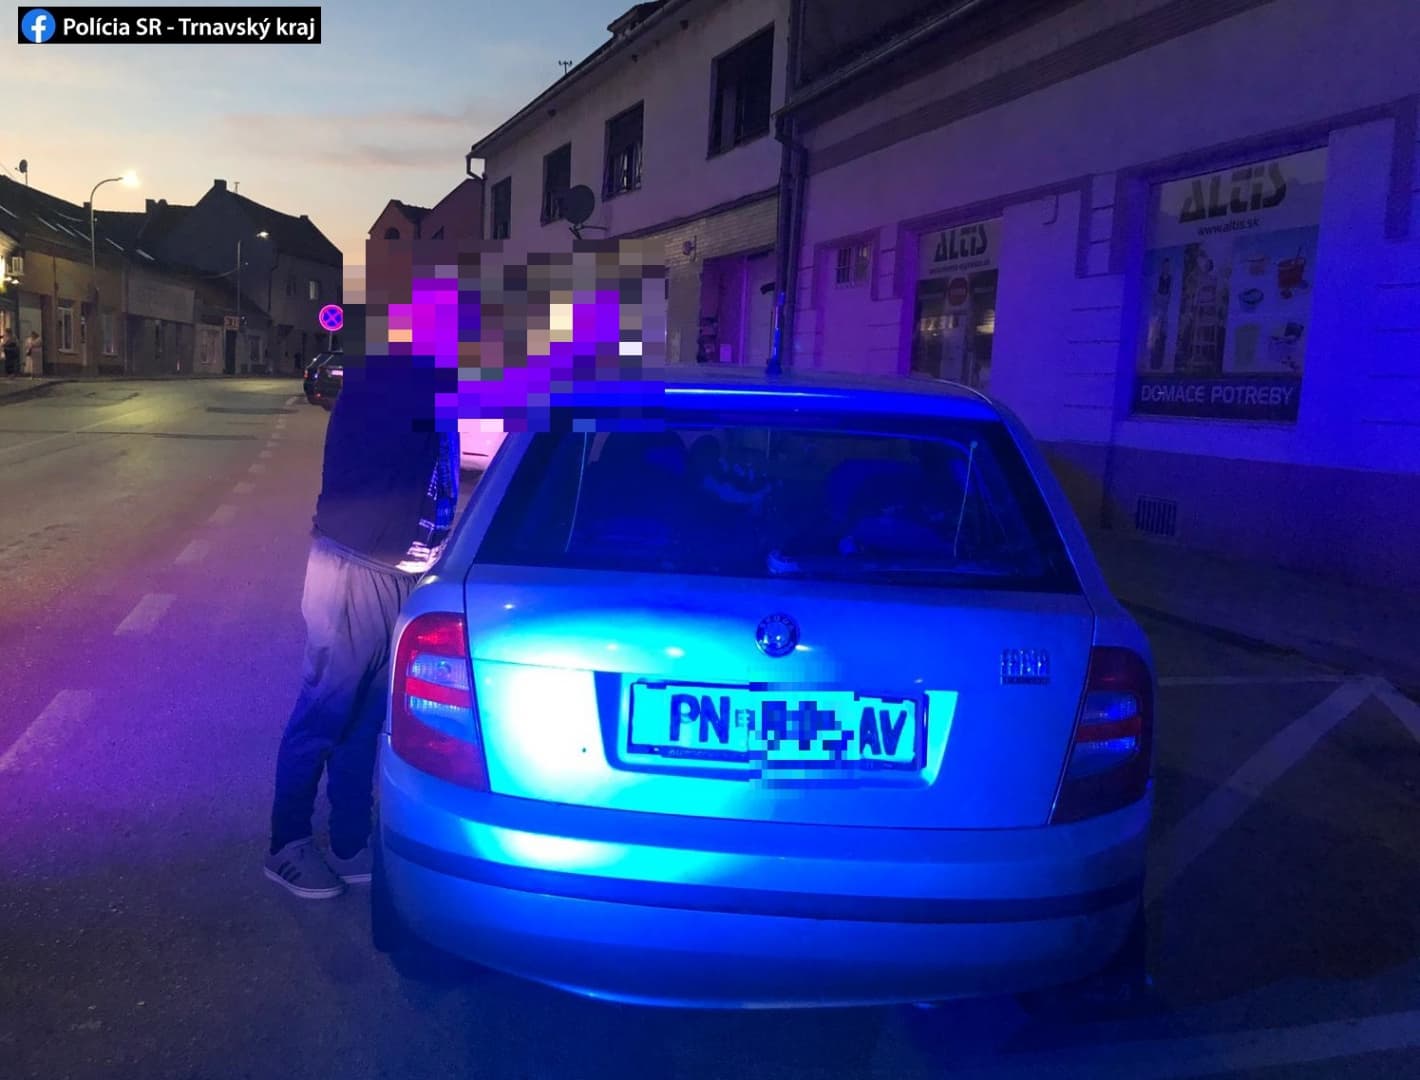 Városi rendőrök fülelték le a tagot, aki korábban azzal bukott le, hogy filctollal rajzolt a kocsijára rendszámtáblát